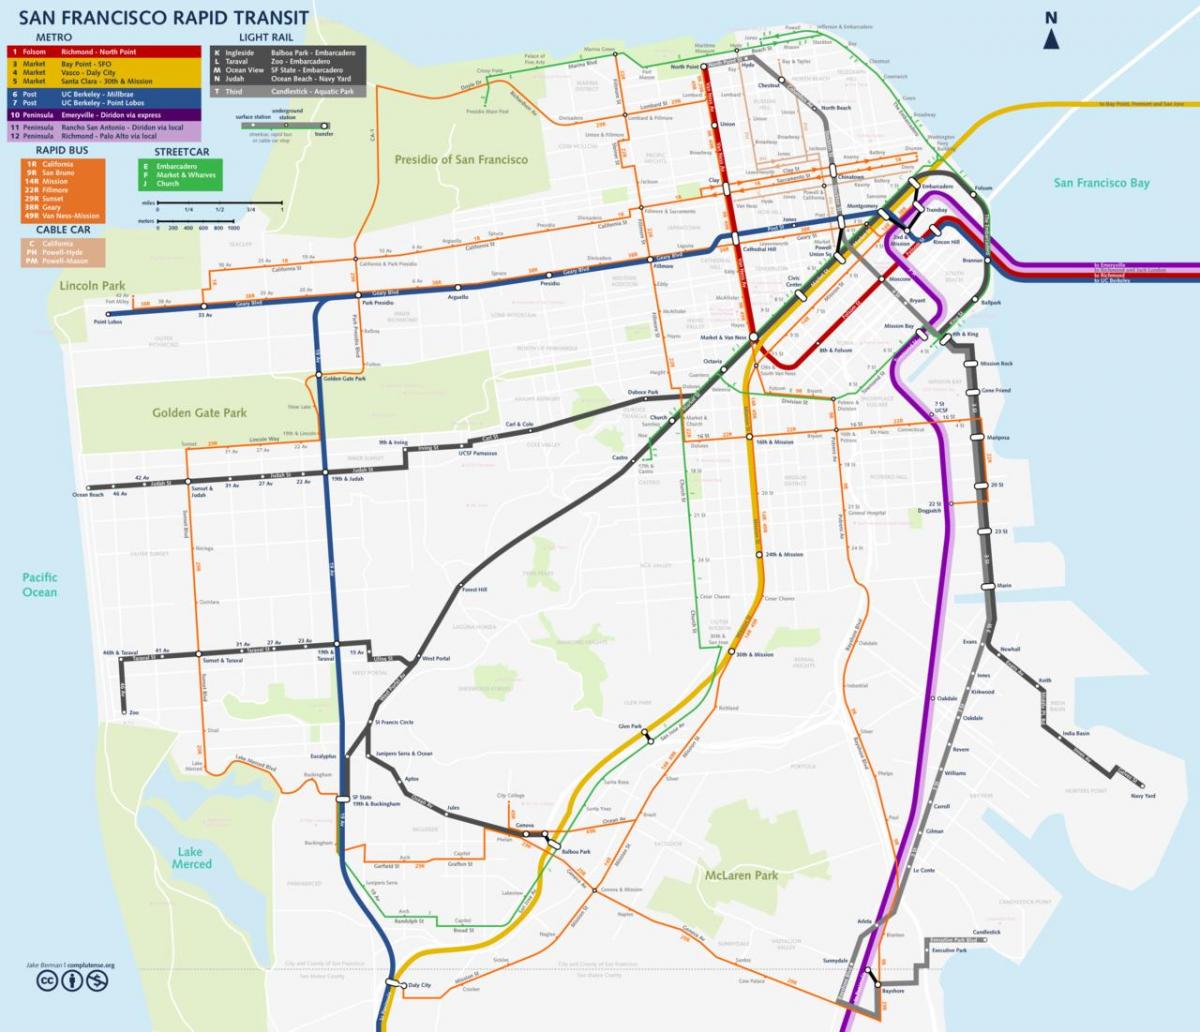 San Fran transportit publik hartë